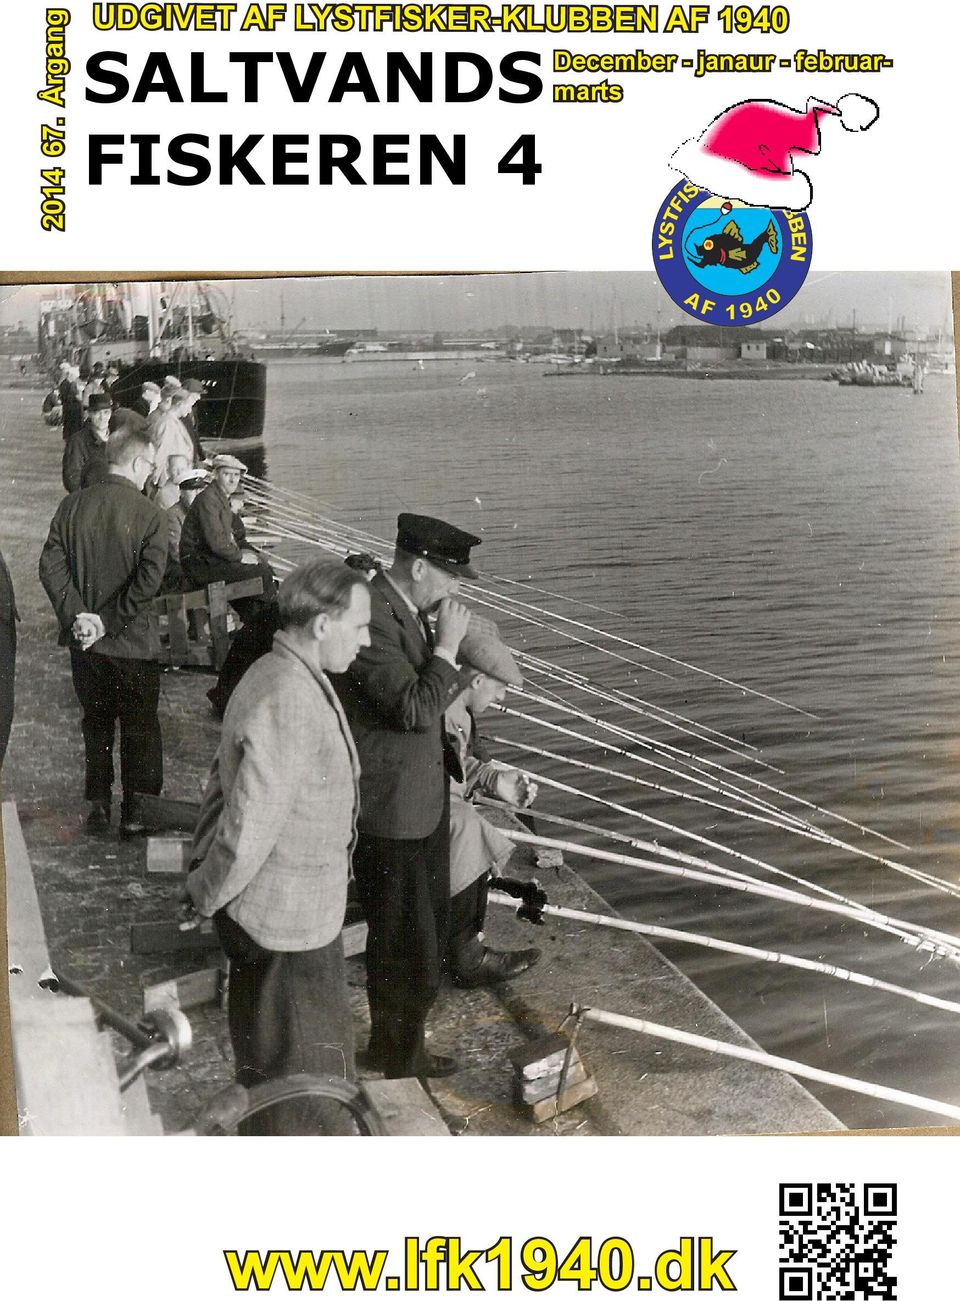 LYSTFISKER-KLUBBEN AF 1940